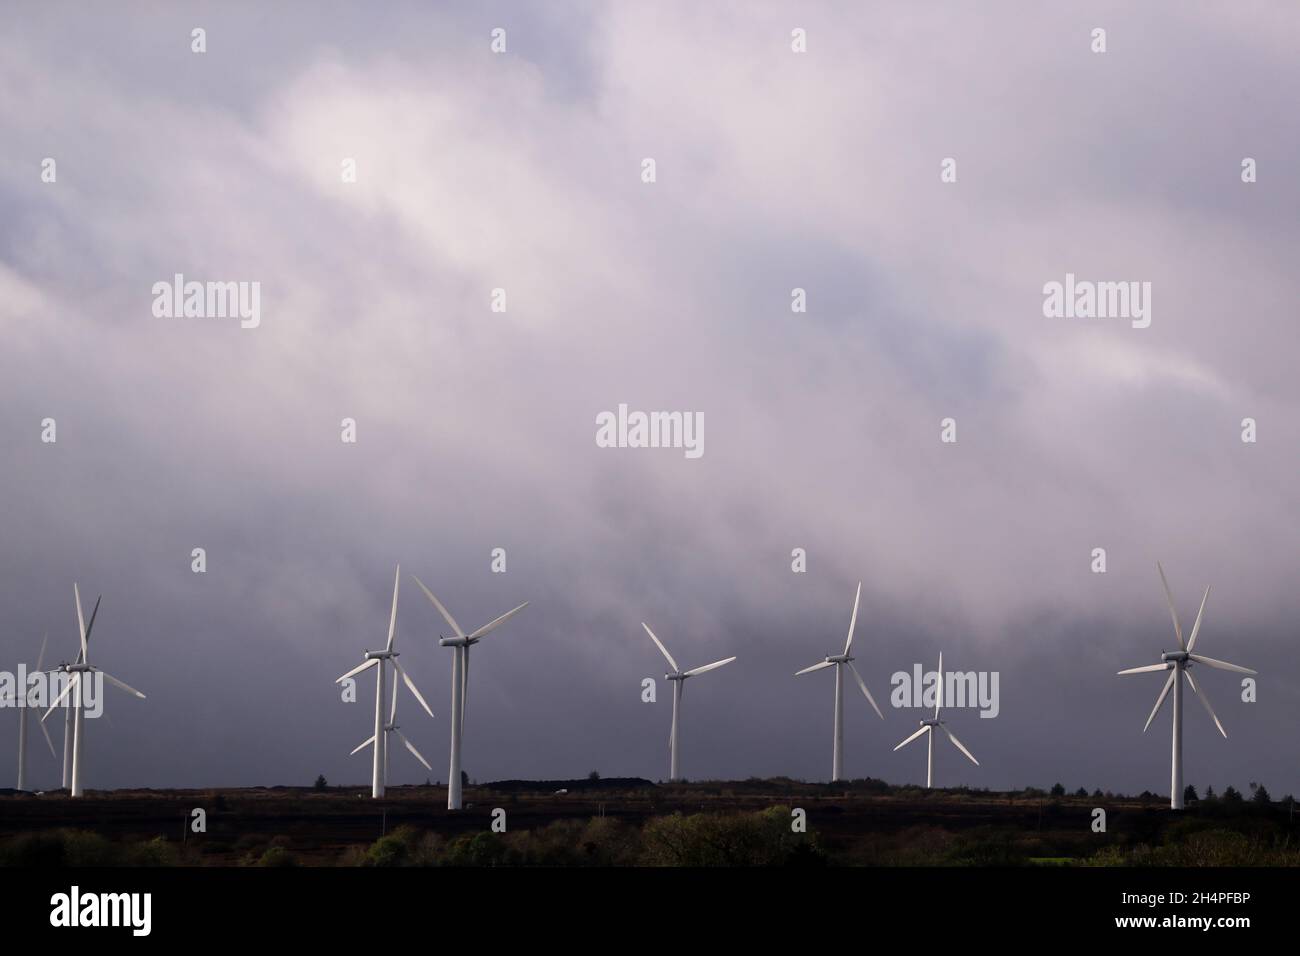 Windturbinen auf Ackerland in Co. Derry, Nordirland. Um die CO2-Emissionen zu reduzieren, nutzen Großbritannien und die Regierungen Wind- und Solarenergie. Stockfoto